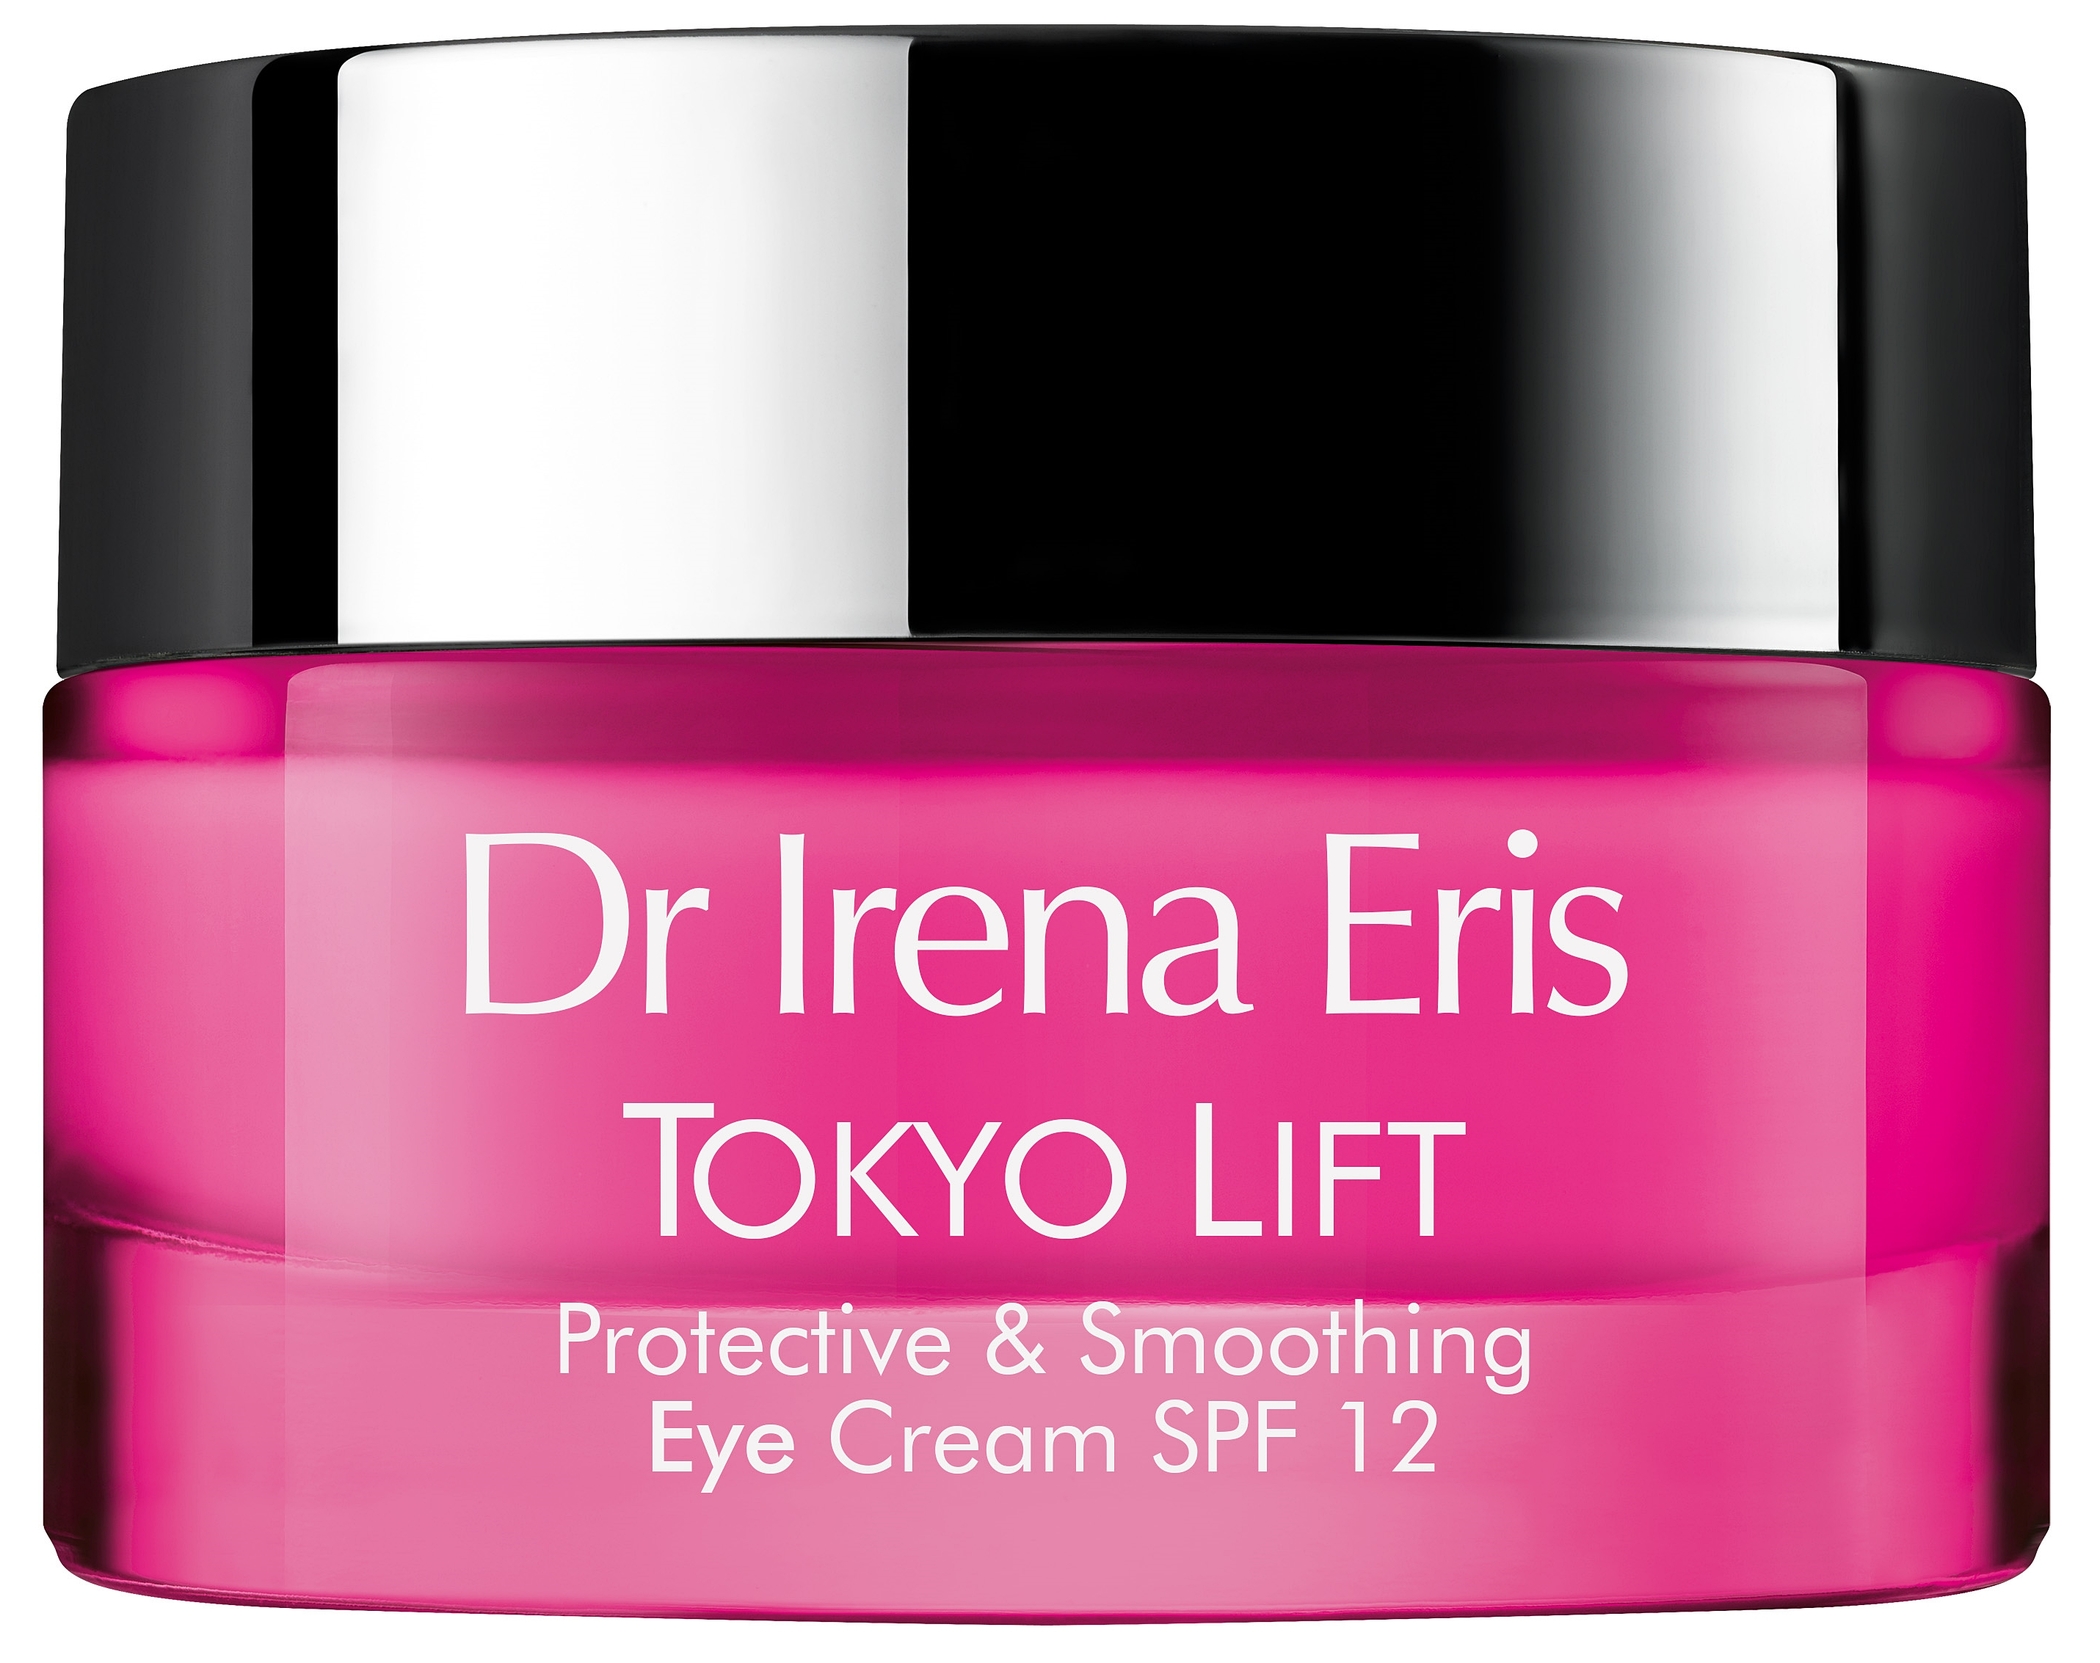 Dr Irena Eris Tokyo Lift ochronny krem wygładzający pod oczy, 15ml